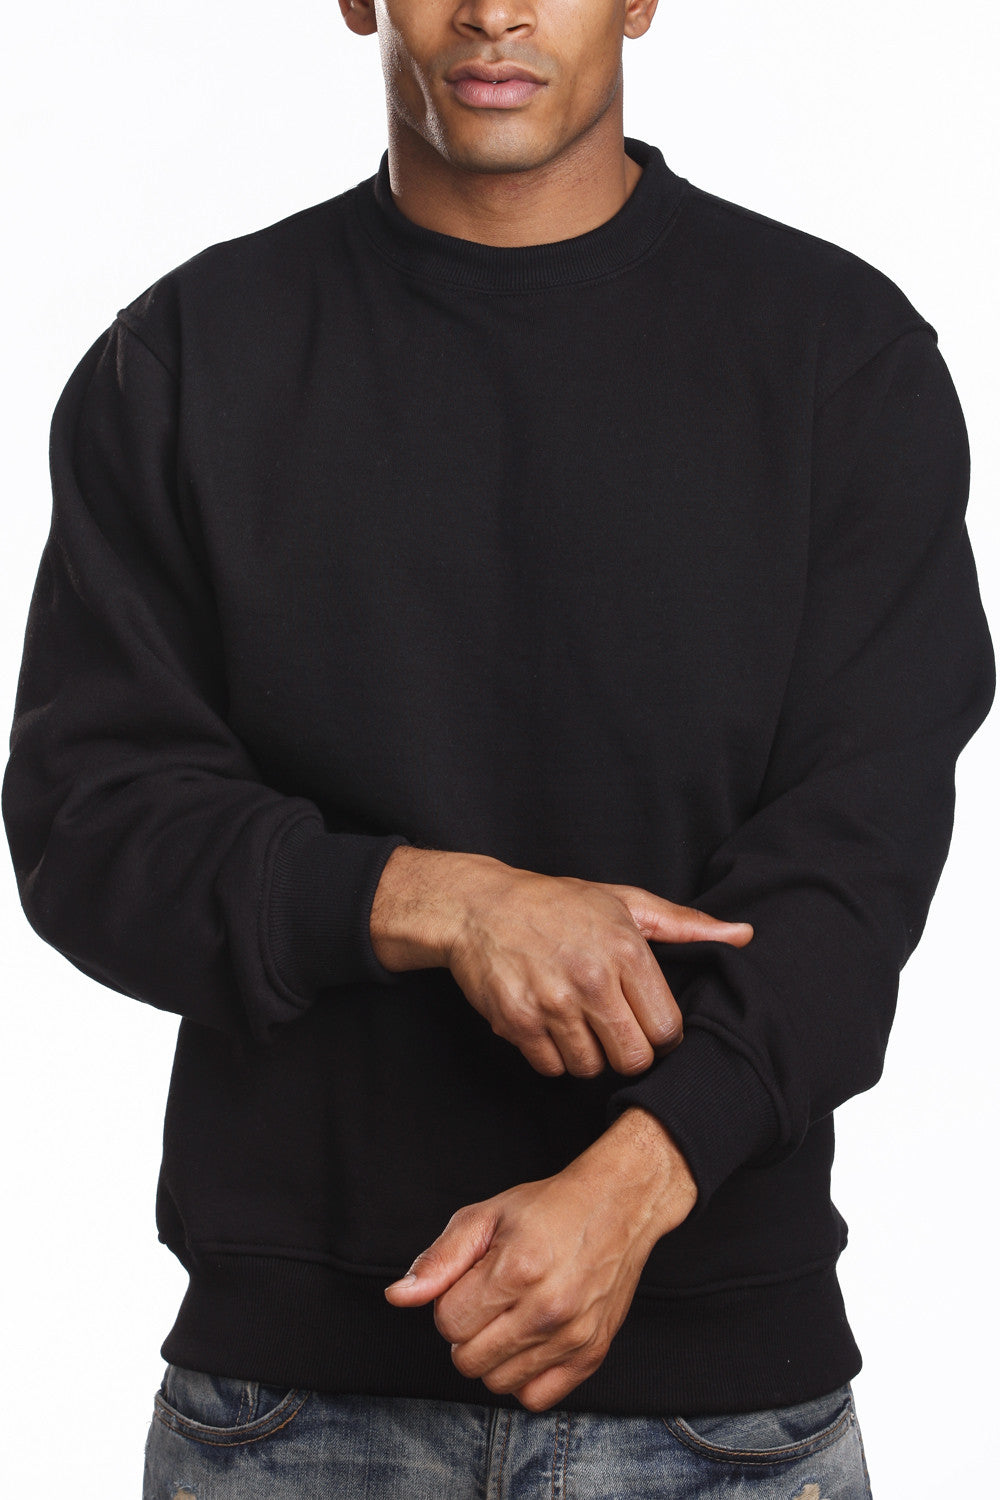 FiveShops Hoodie Sweatshirt Mens Hip Hop Pullover Hoodies Streetwear Hoodie  Dark Grey M : : Clothing, Shoes & Accessories